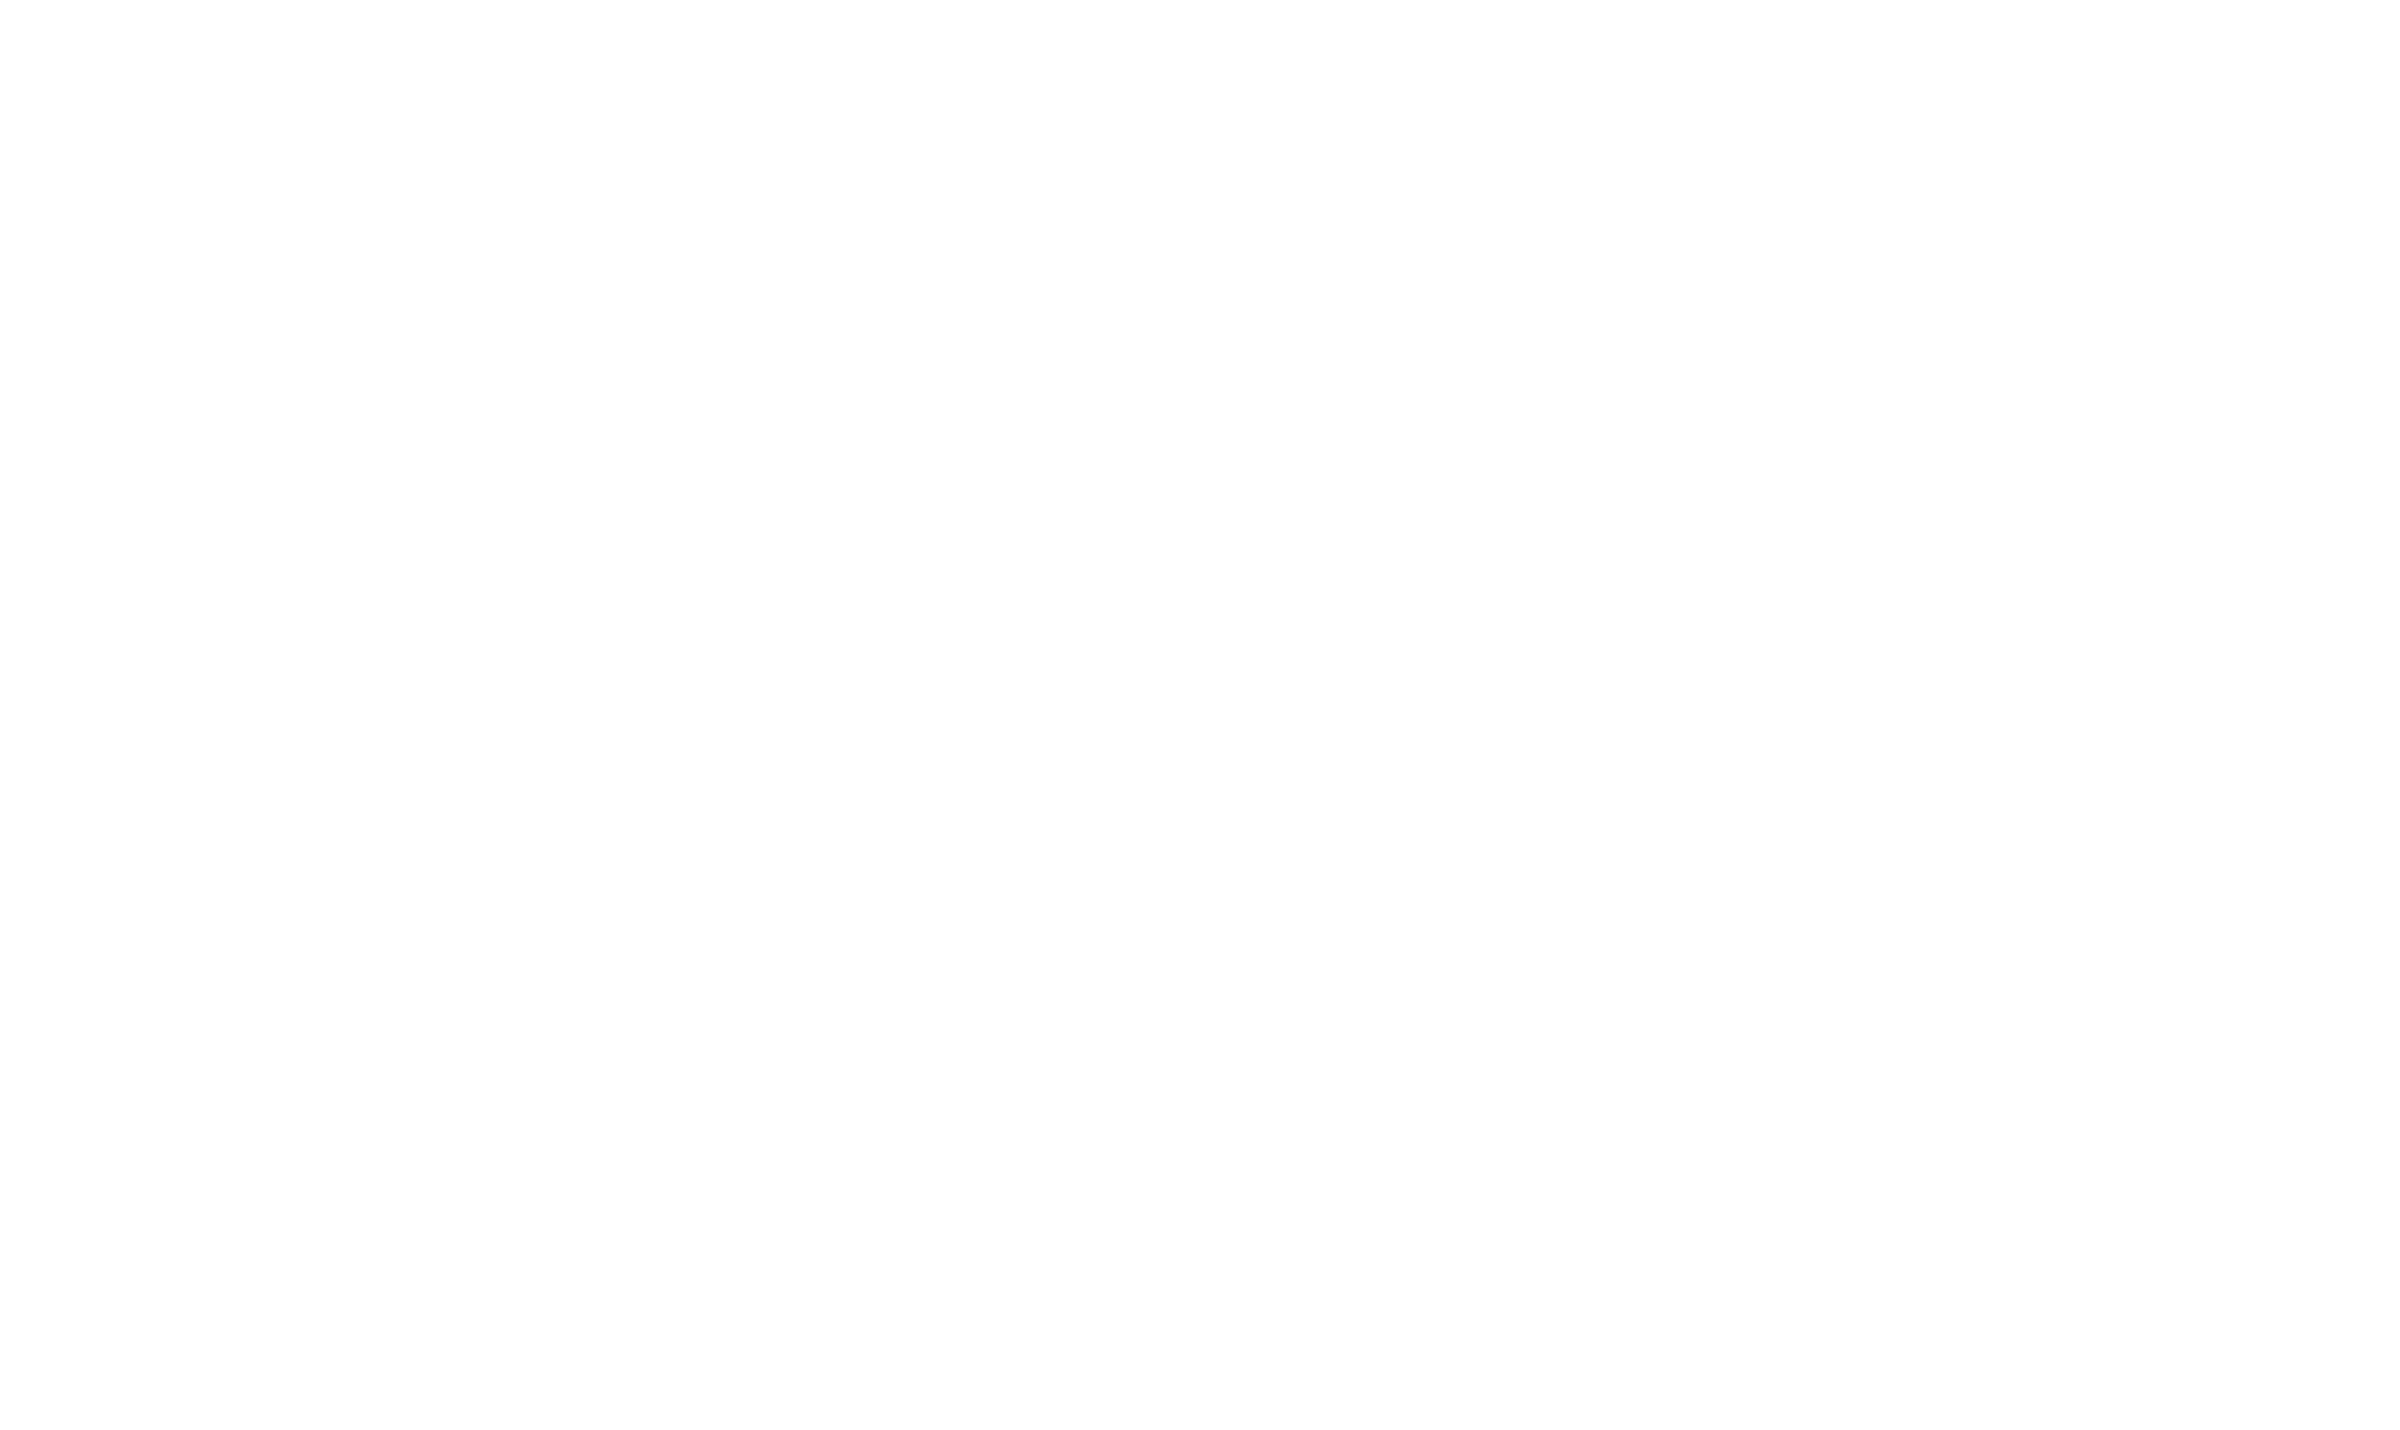 cannes-film-festival-logo-logo-black-and-white